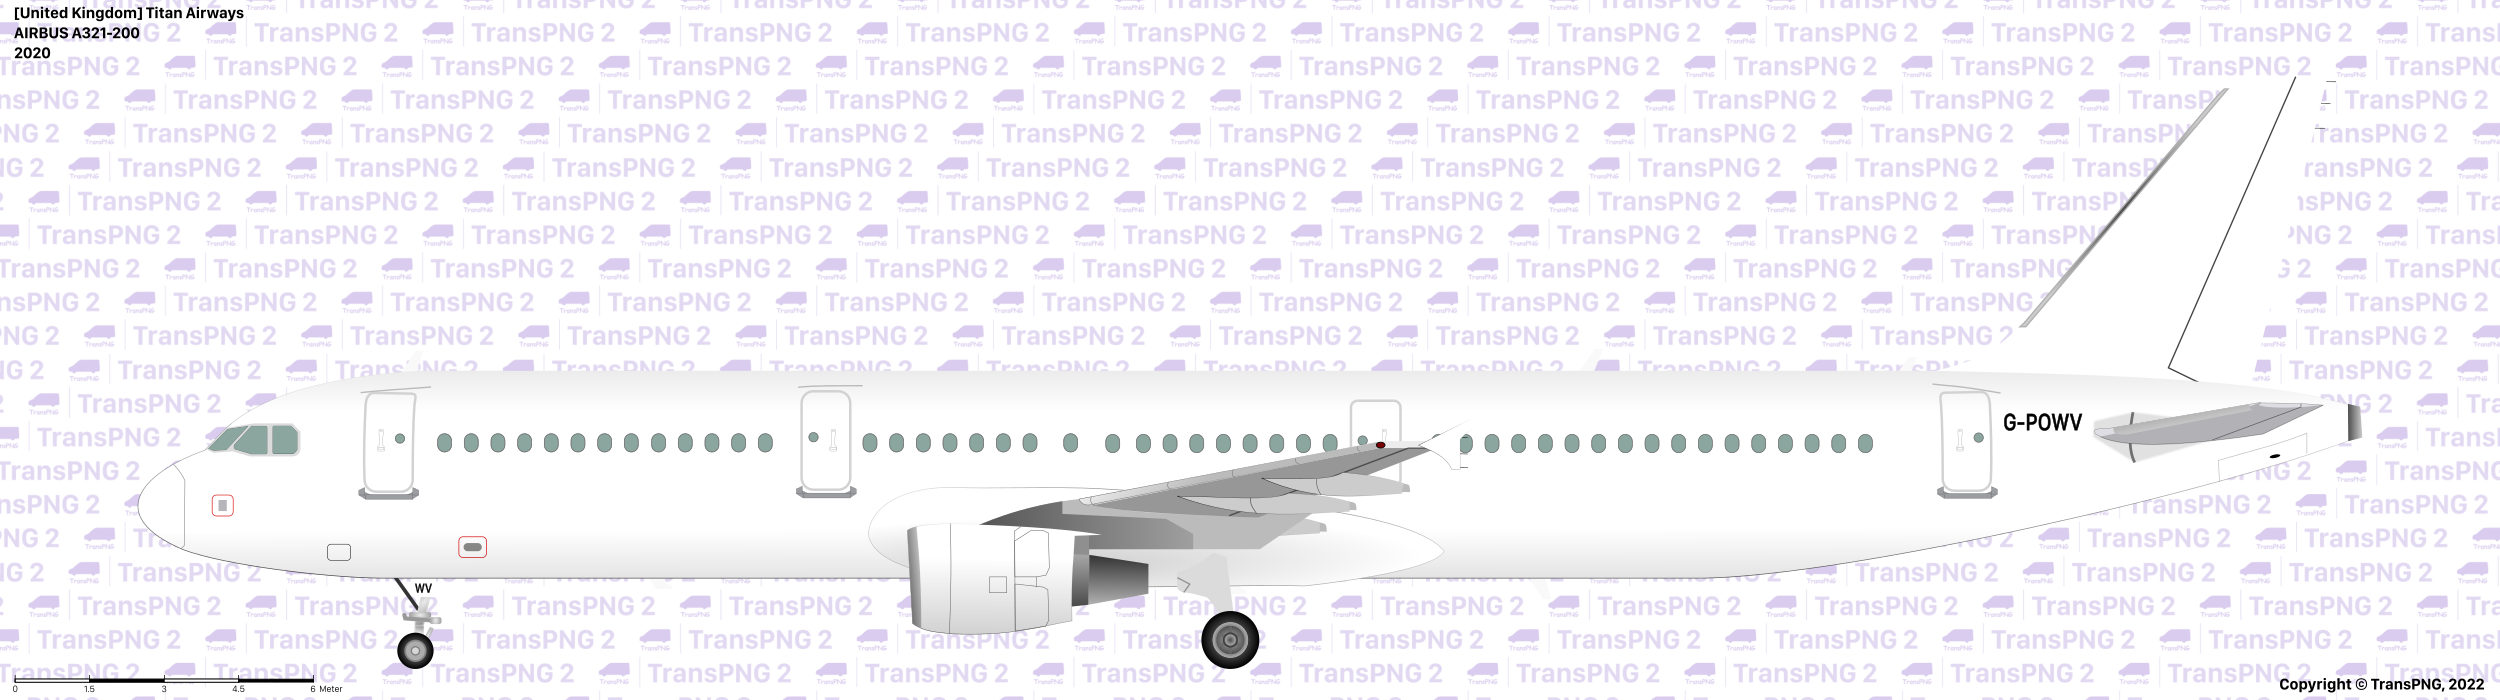 [25160] Titan Airways 51922656837_85b7dab742_o